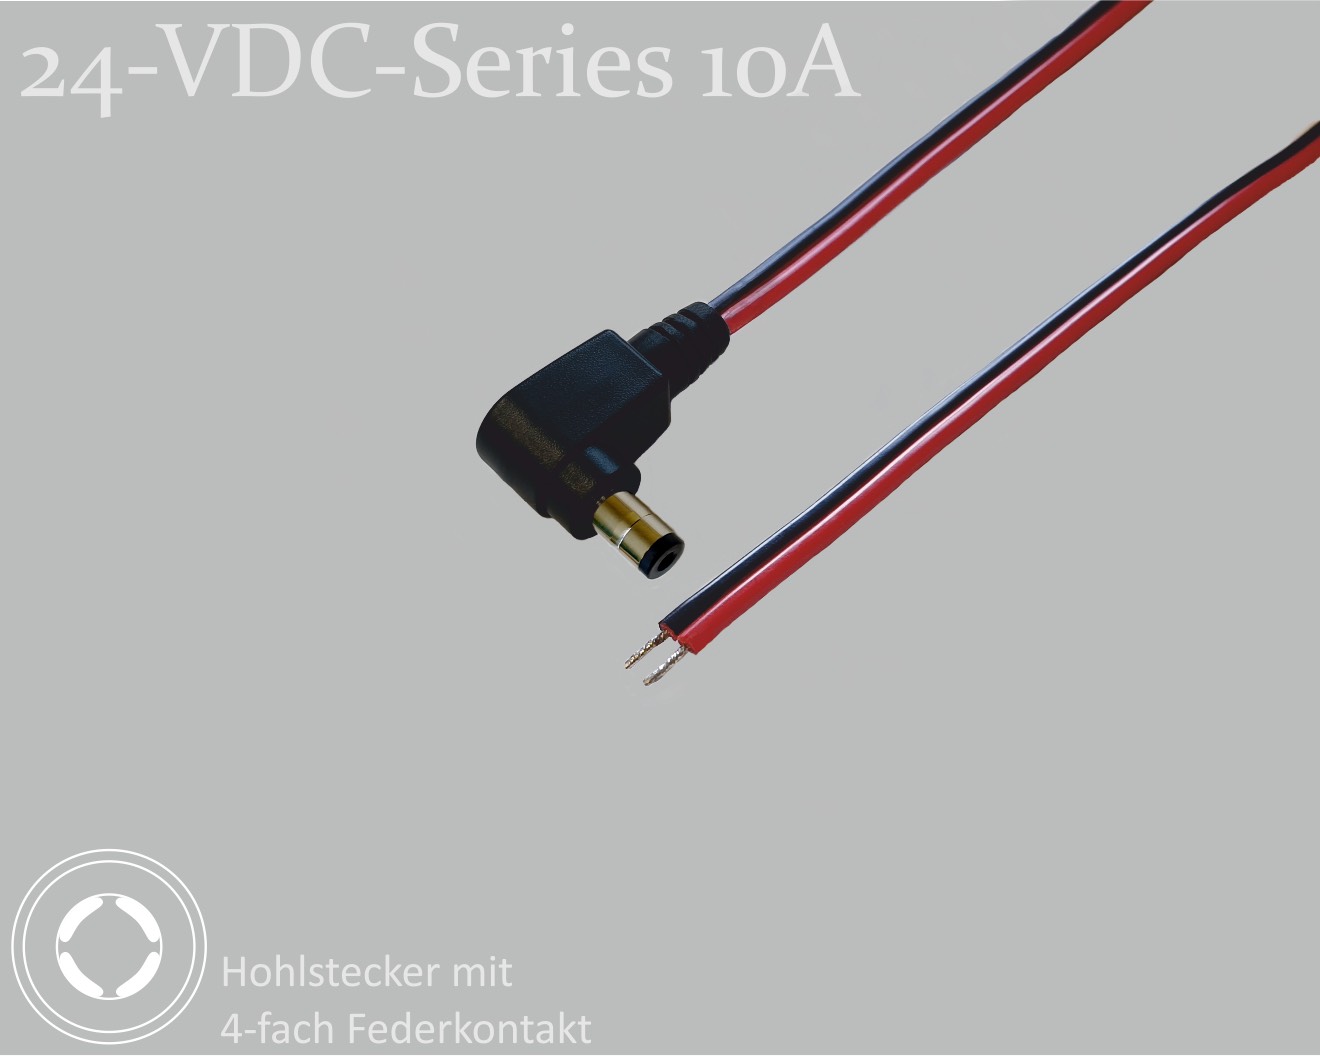 24-VDC-Series 10A, DC-Anschlusskabel, DC-Winkelstecker mit 4-Feder-Kontakt 2,1x5,5x9,5mm, Flachkabel 2x0,75mm², rot/schwarz, verzinnte Enden, 1,5m